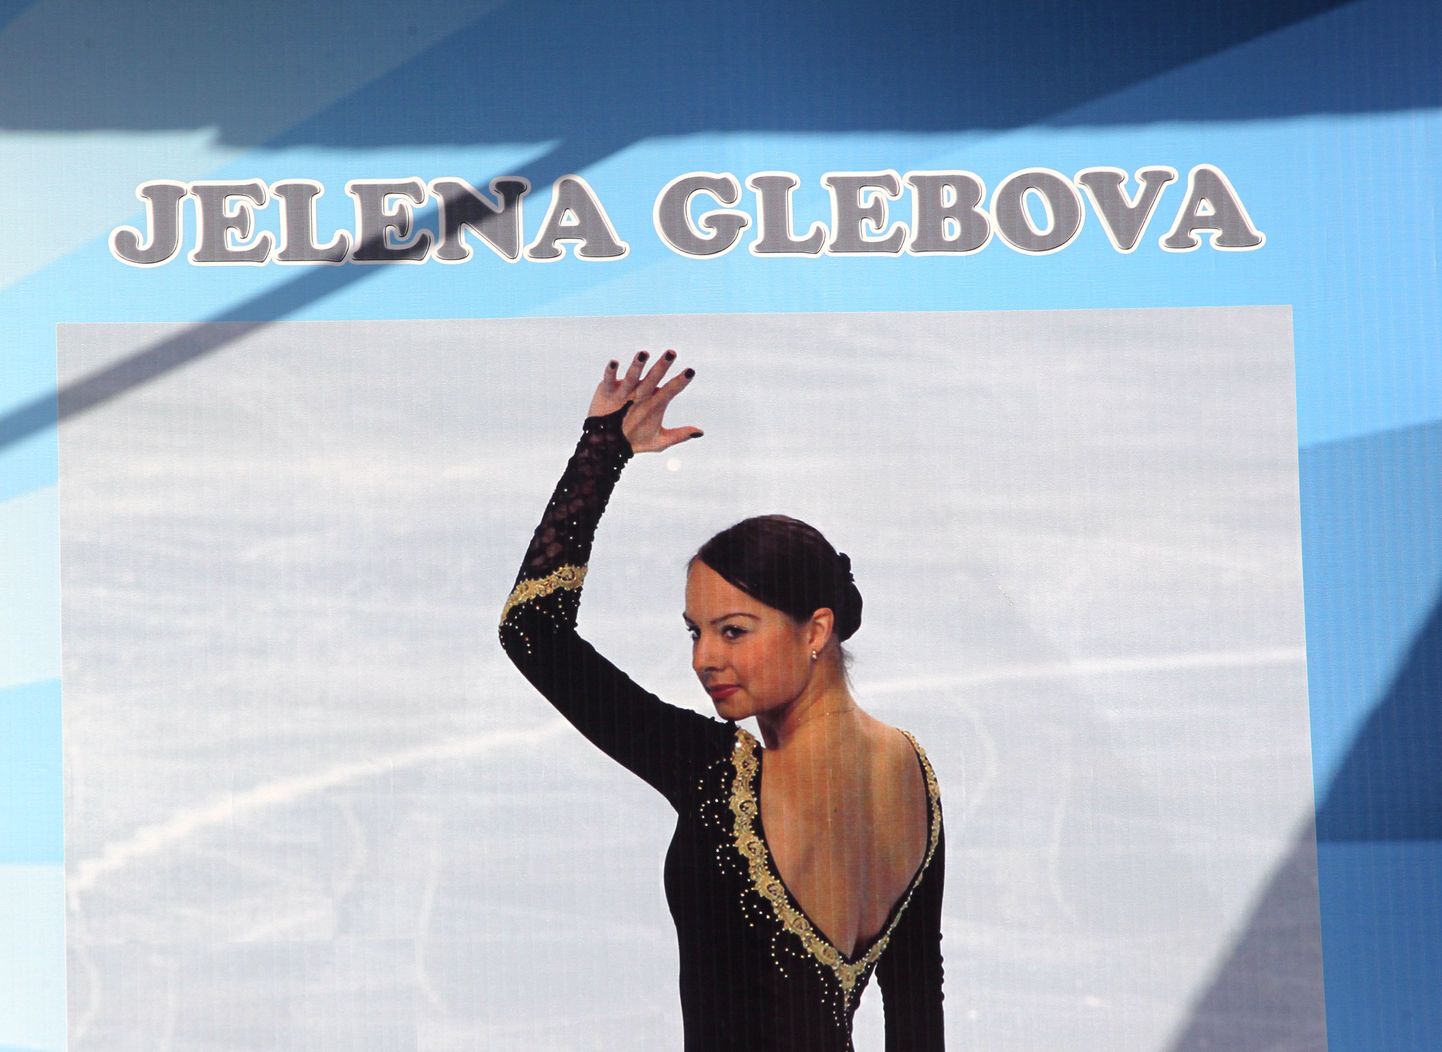 Jelena Glebova näoga reklaamis linnavalitsus ka poolelioleva Tondiraba jäähalli «avamist» enne mulluseid kohalikke valimisi.